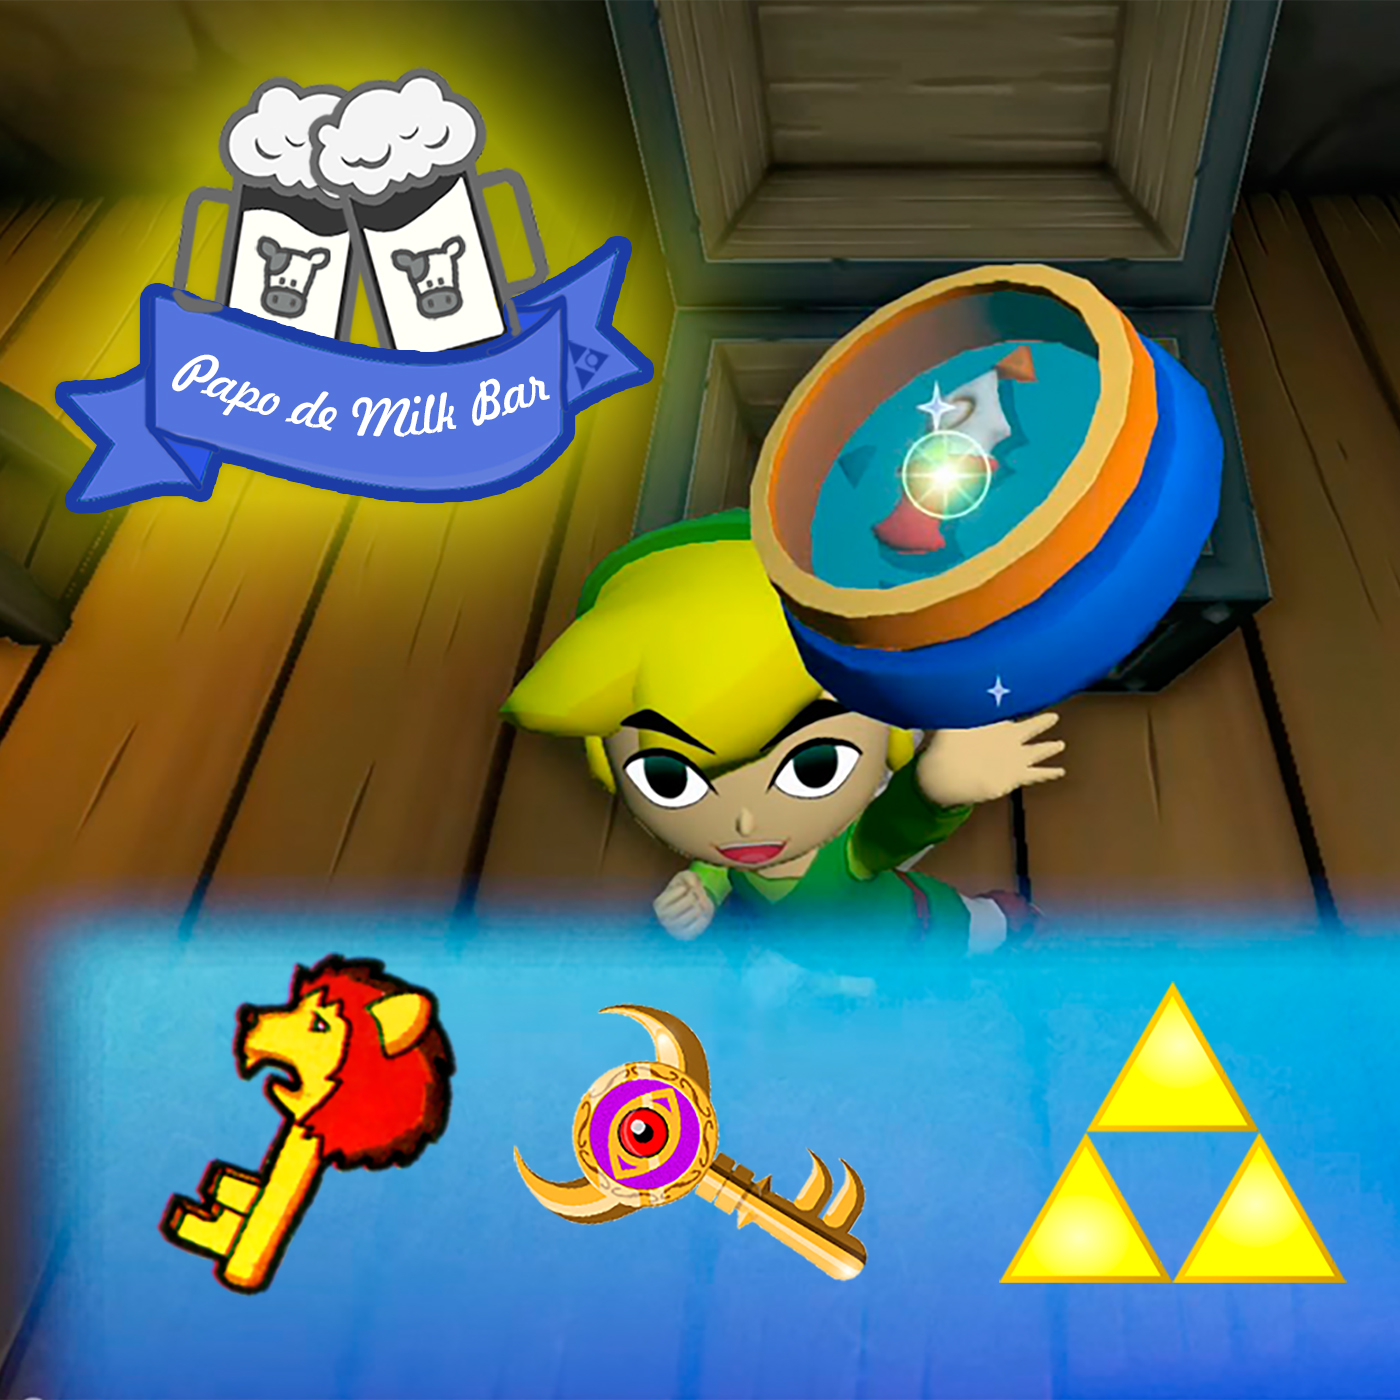 Papo de Milk Bar #31 – Os elementos-chave de Zelda